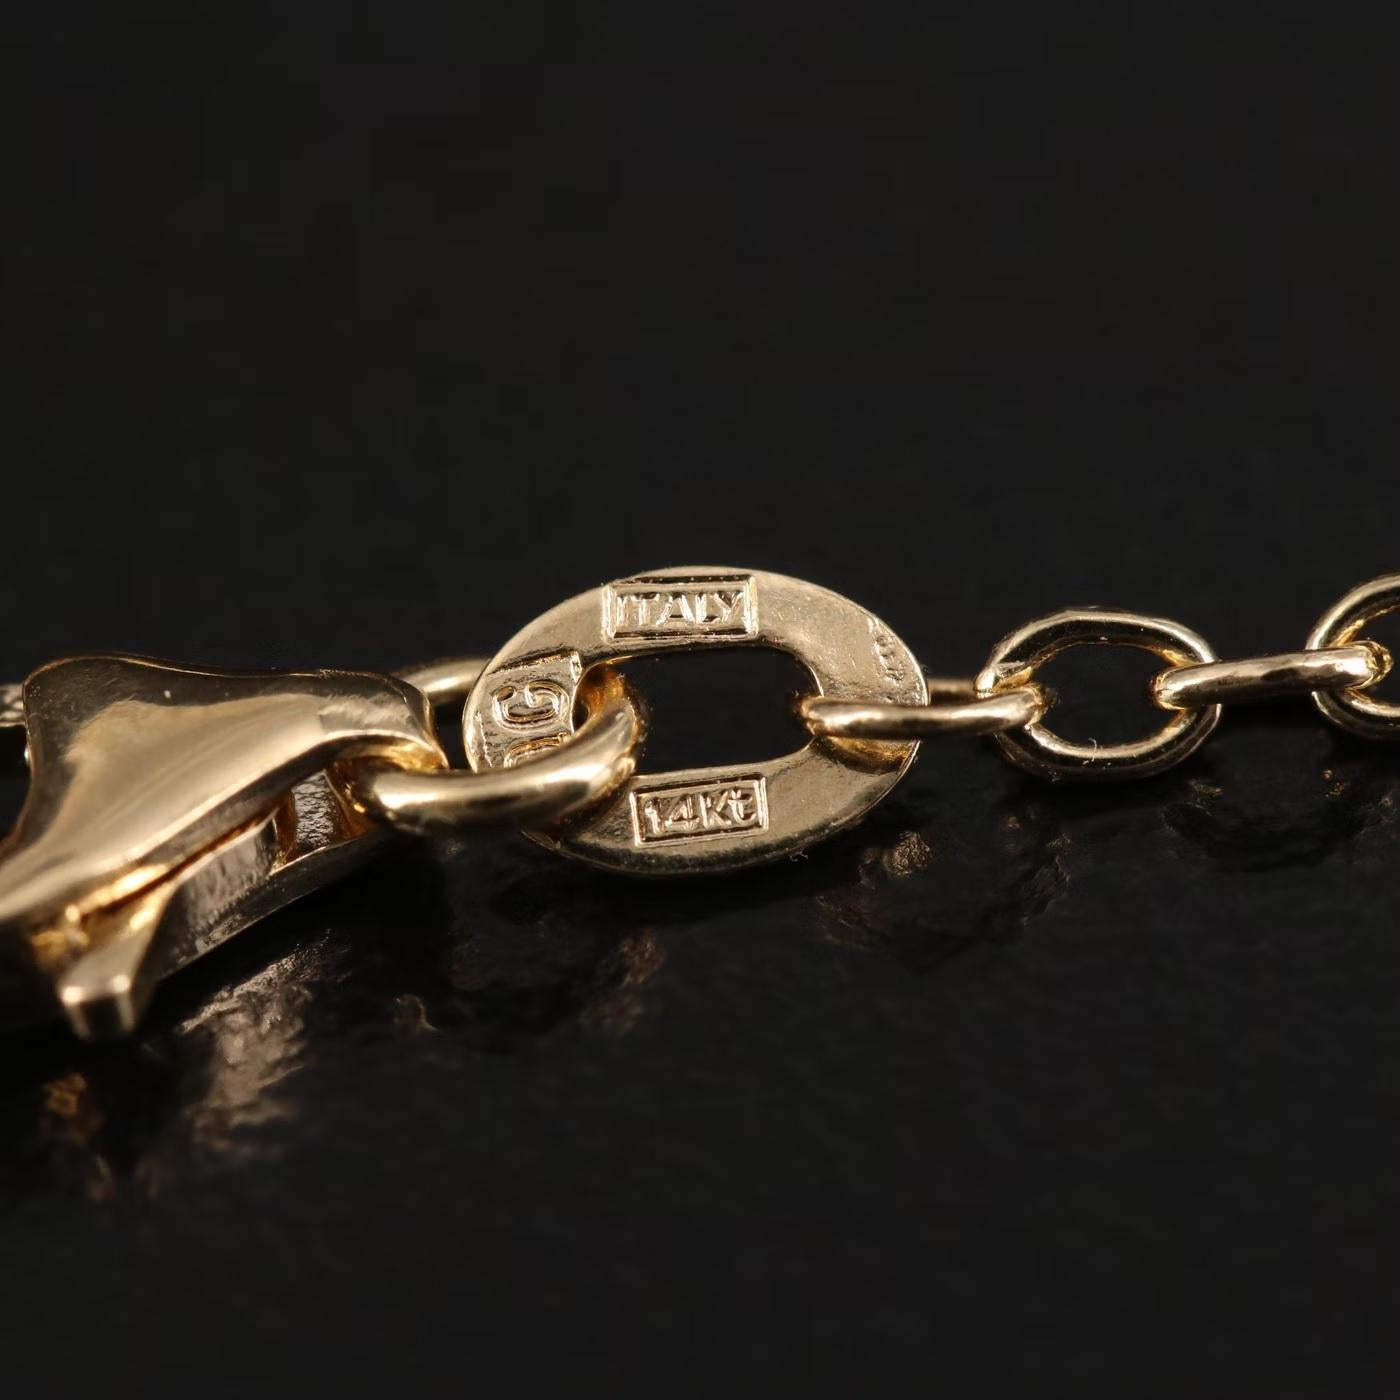 $2950 / Italy Designer Top Quality Fringe Necklace / Adjustable / 14K Gold 2